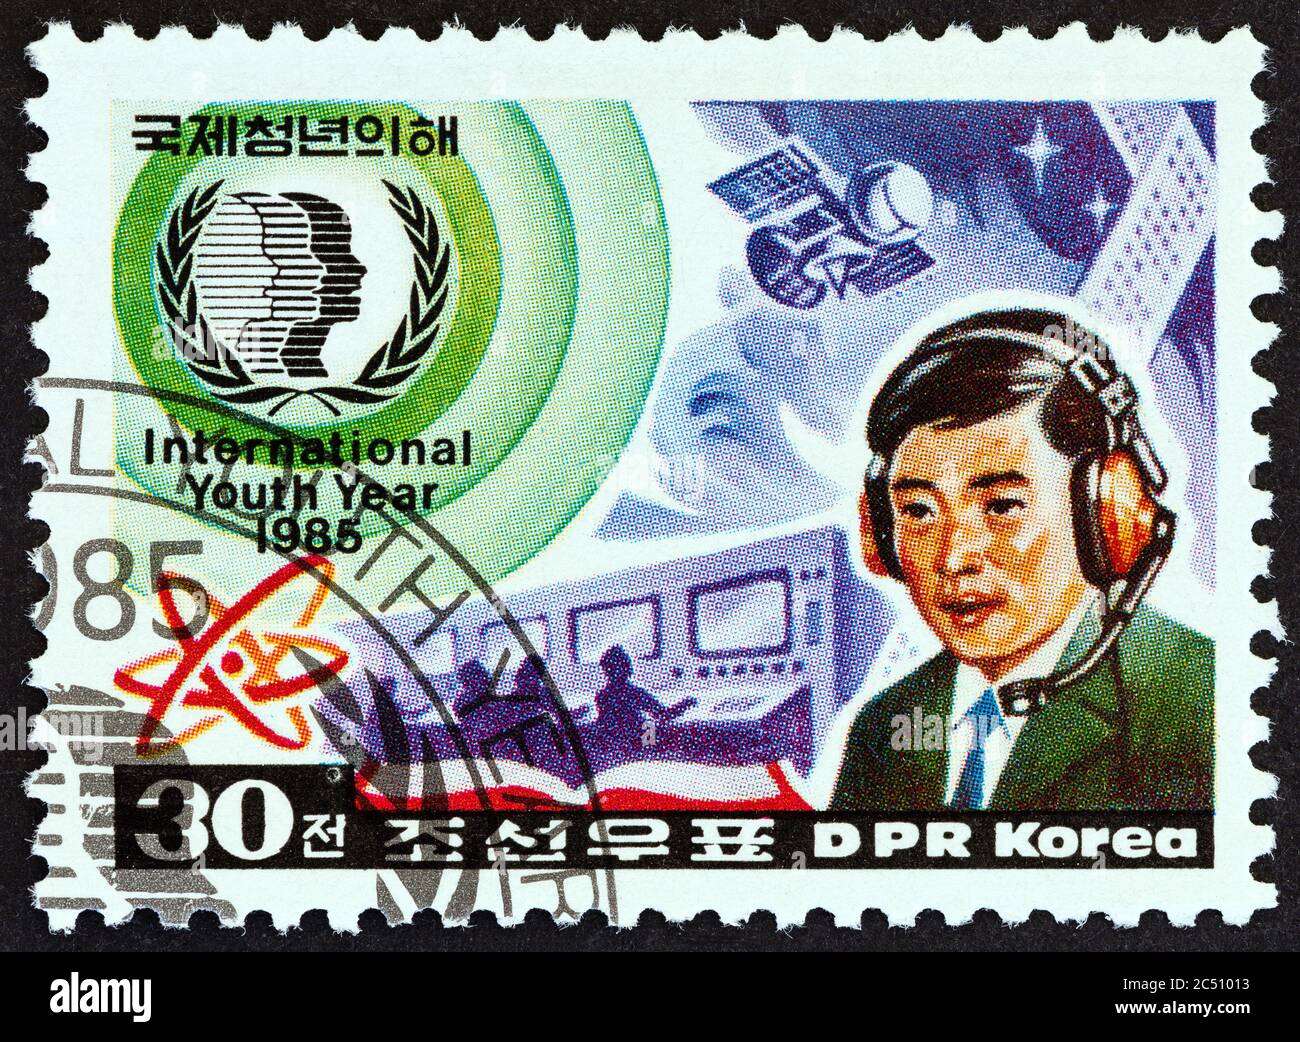 CORÉE DU NORD - VERS 1985 : un timbre imprimé en Corée du Nord dans le numéro de l'année internationale de la jeunesse montre la technologie, vers 1985. Banque D'Images